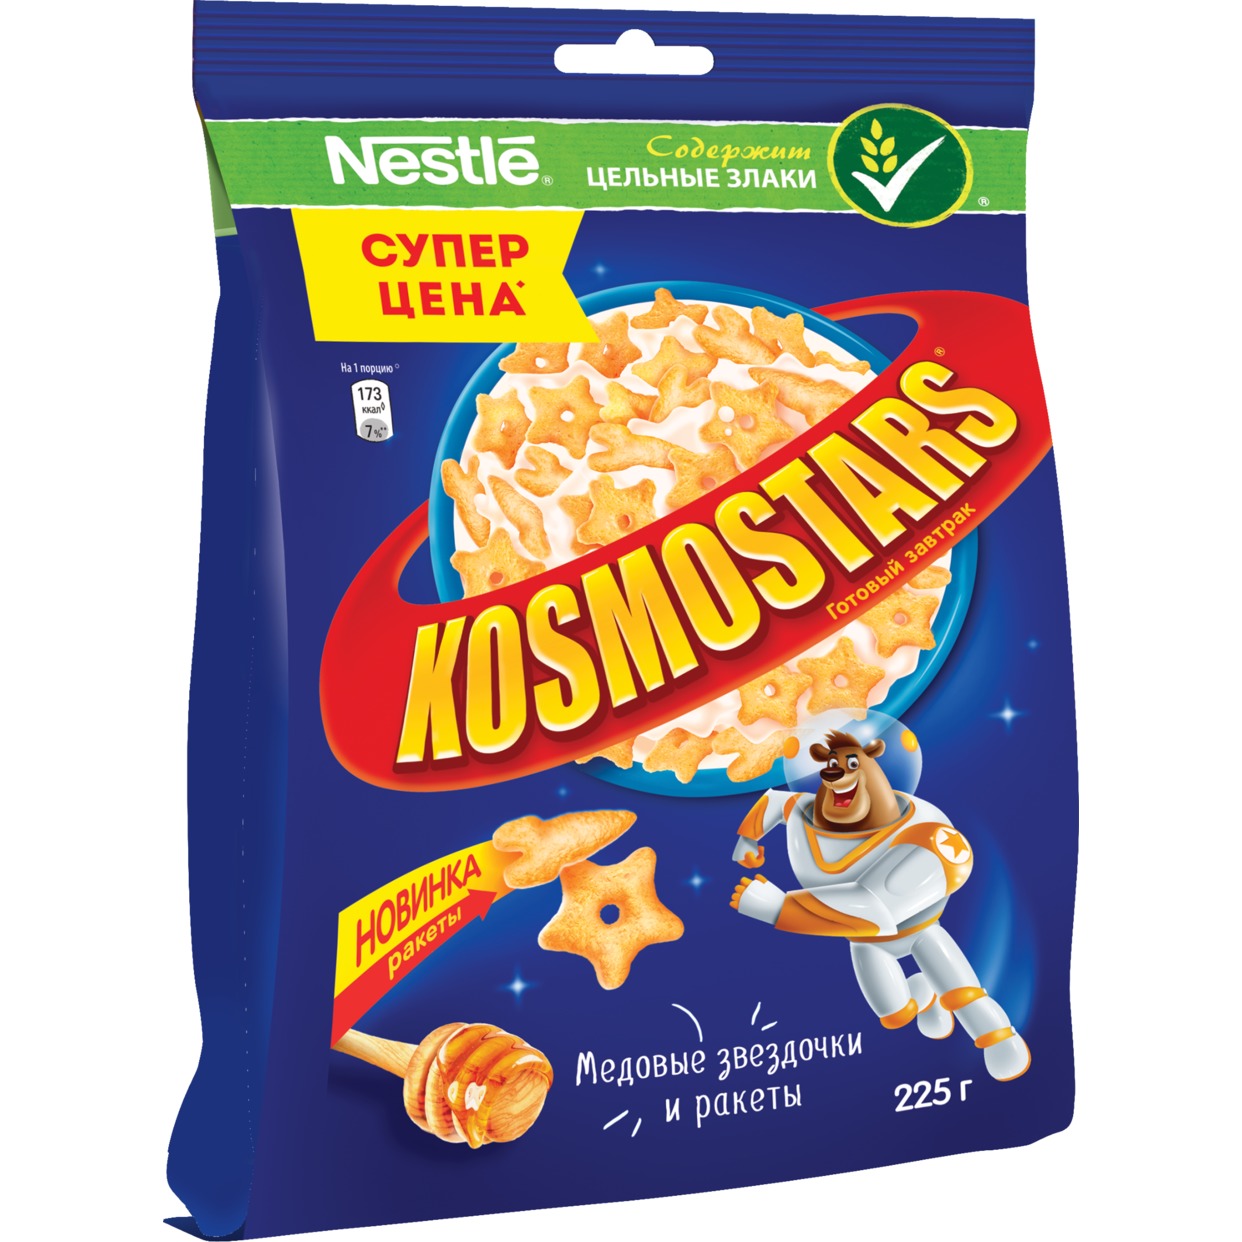 Завтрак Медовый, Kosmostars, 225 г по акции в Пятерочке